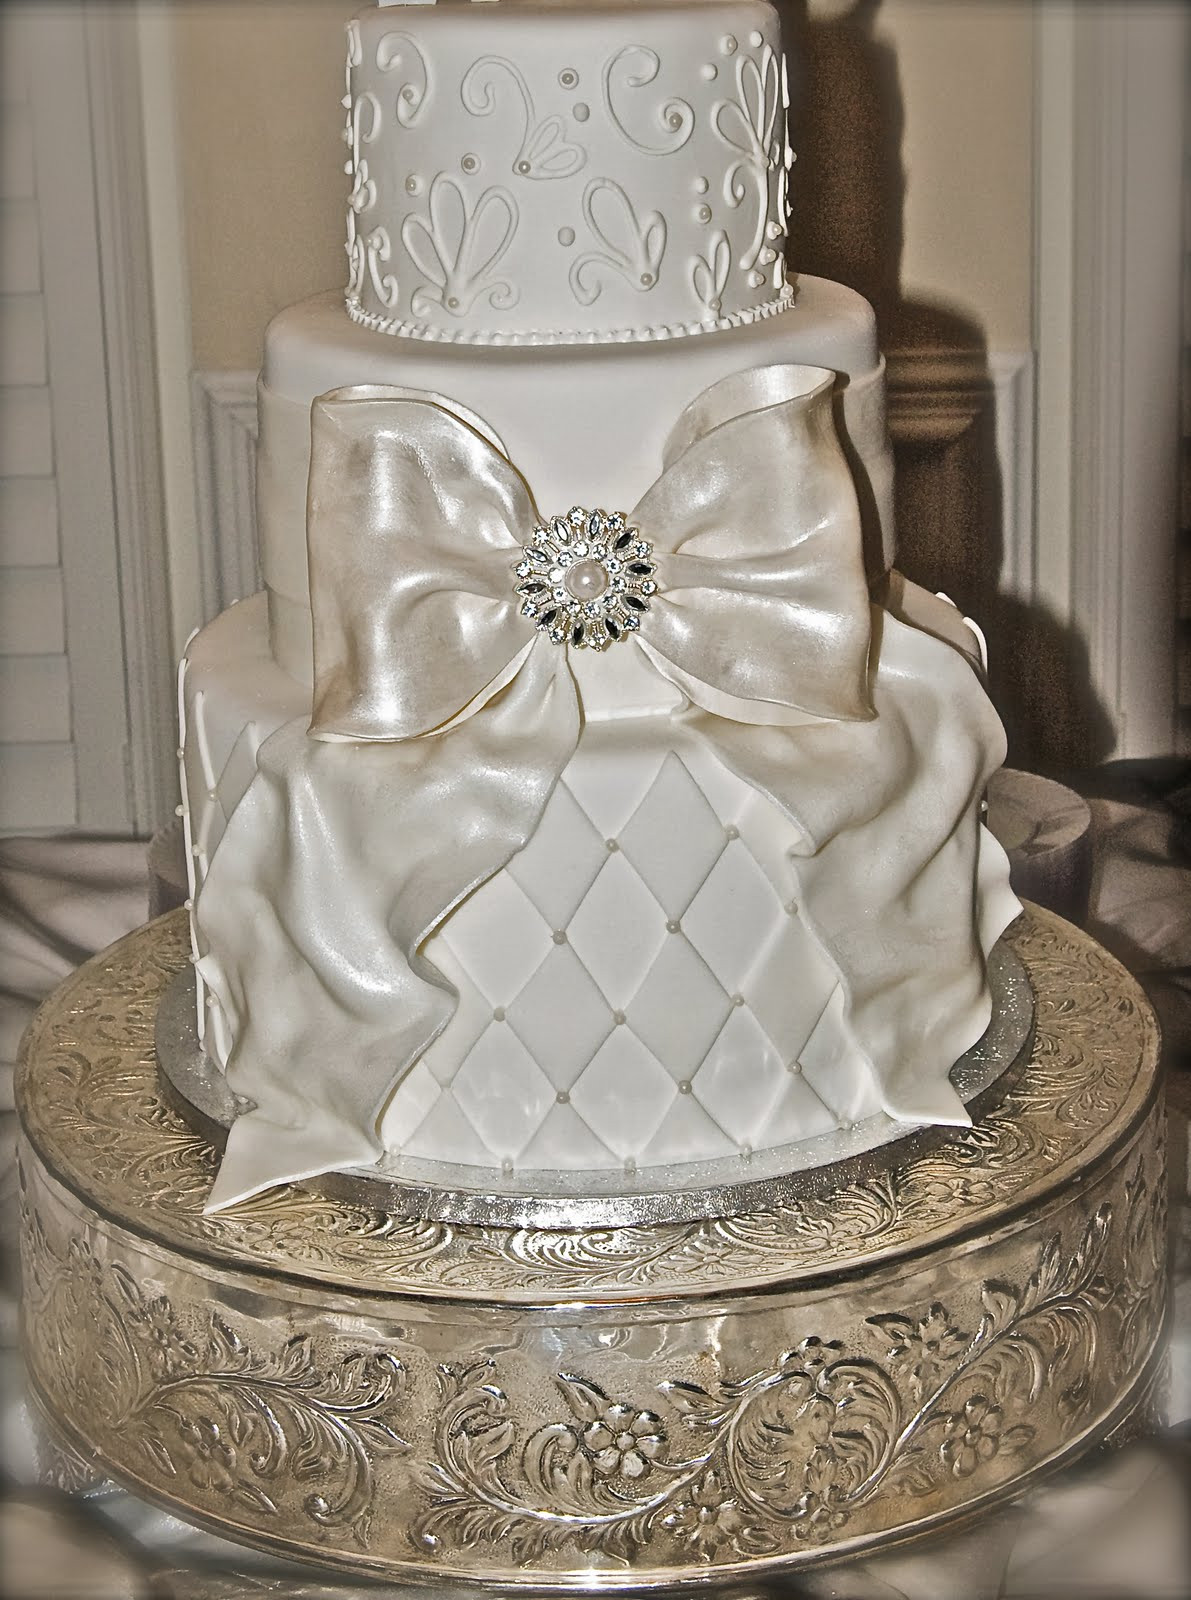 Awesome Wedding Cakes
 Wedding Cake with Bow Sweet Sense of Cake